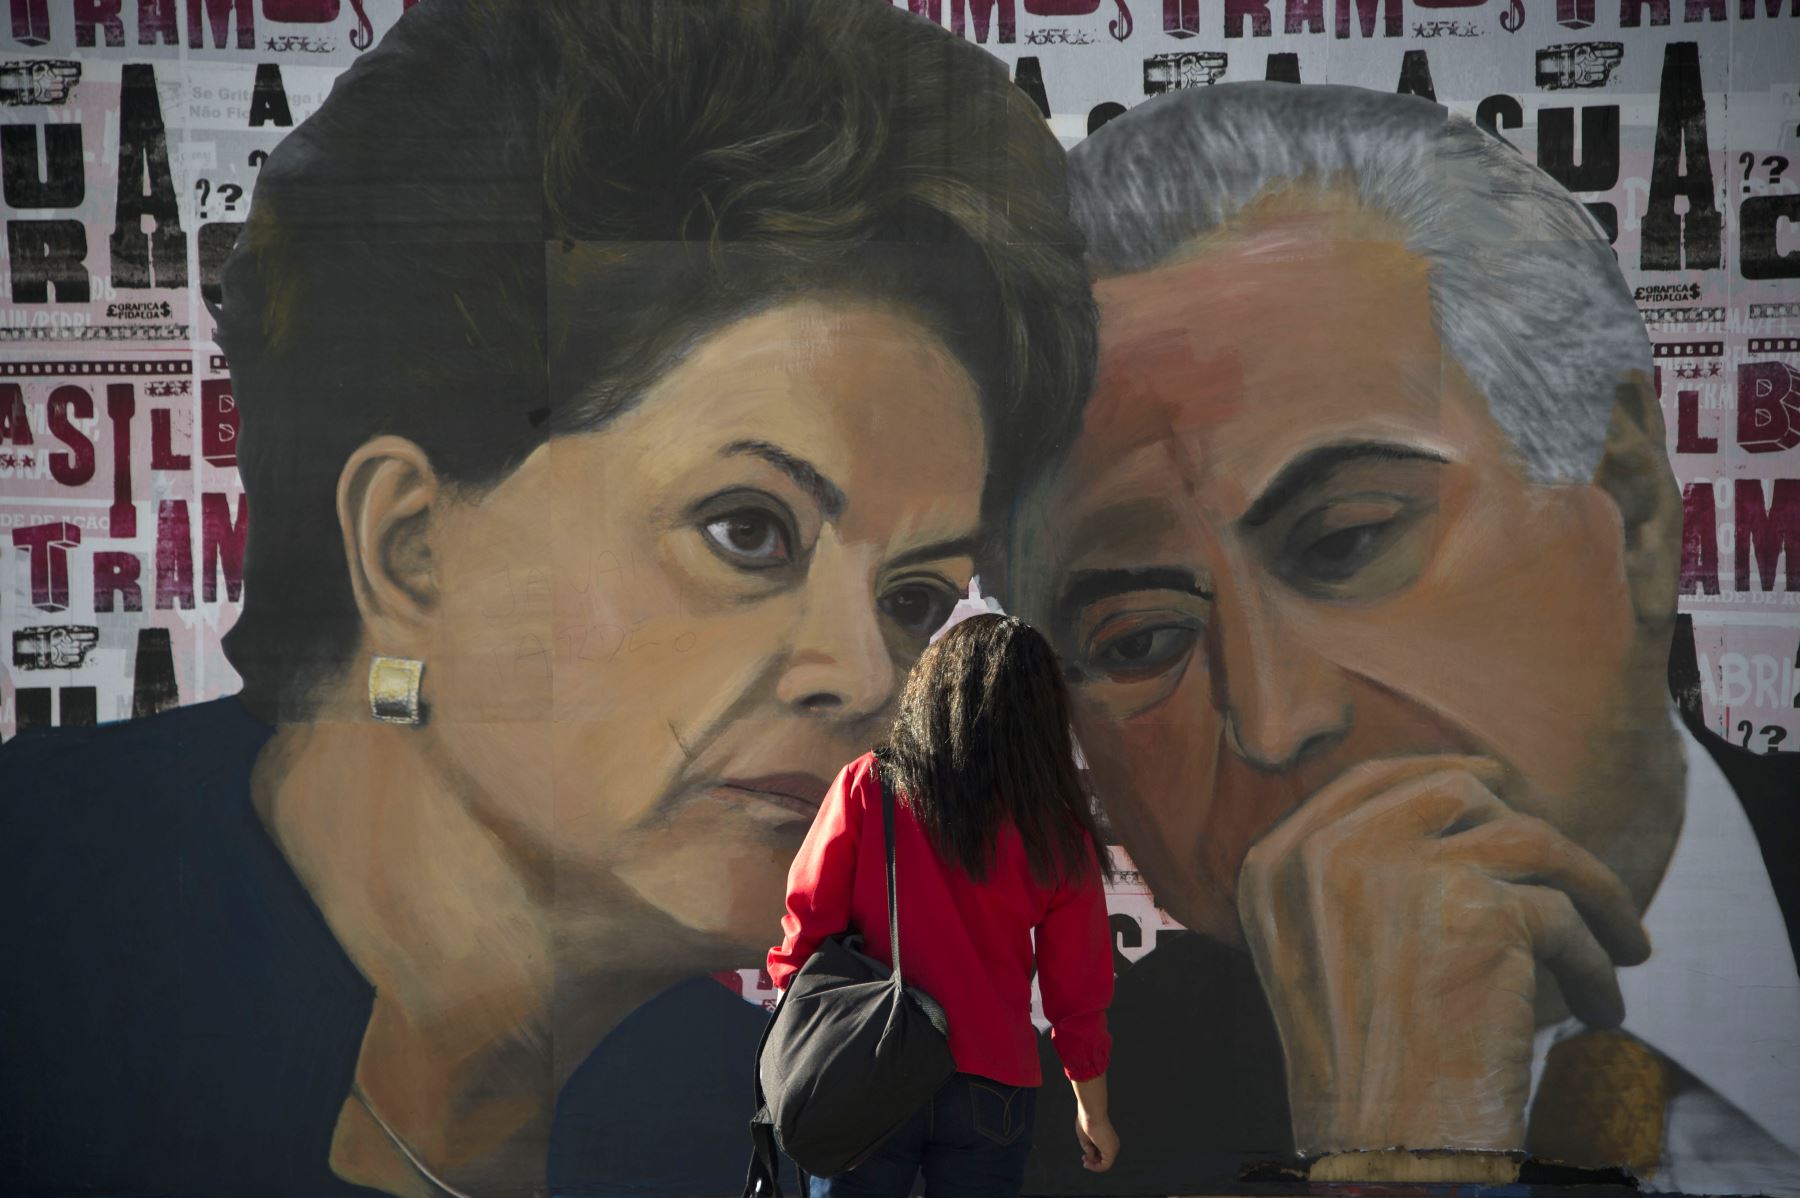 Temer, de 78 años, del Movimiento Democrático Brasileño (MDB), era vicepresidente de Dilma Rousseff, a quien sustituyó en mayo del 2016. Foto: AFP